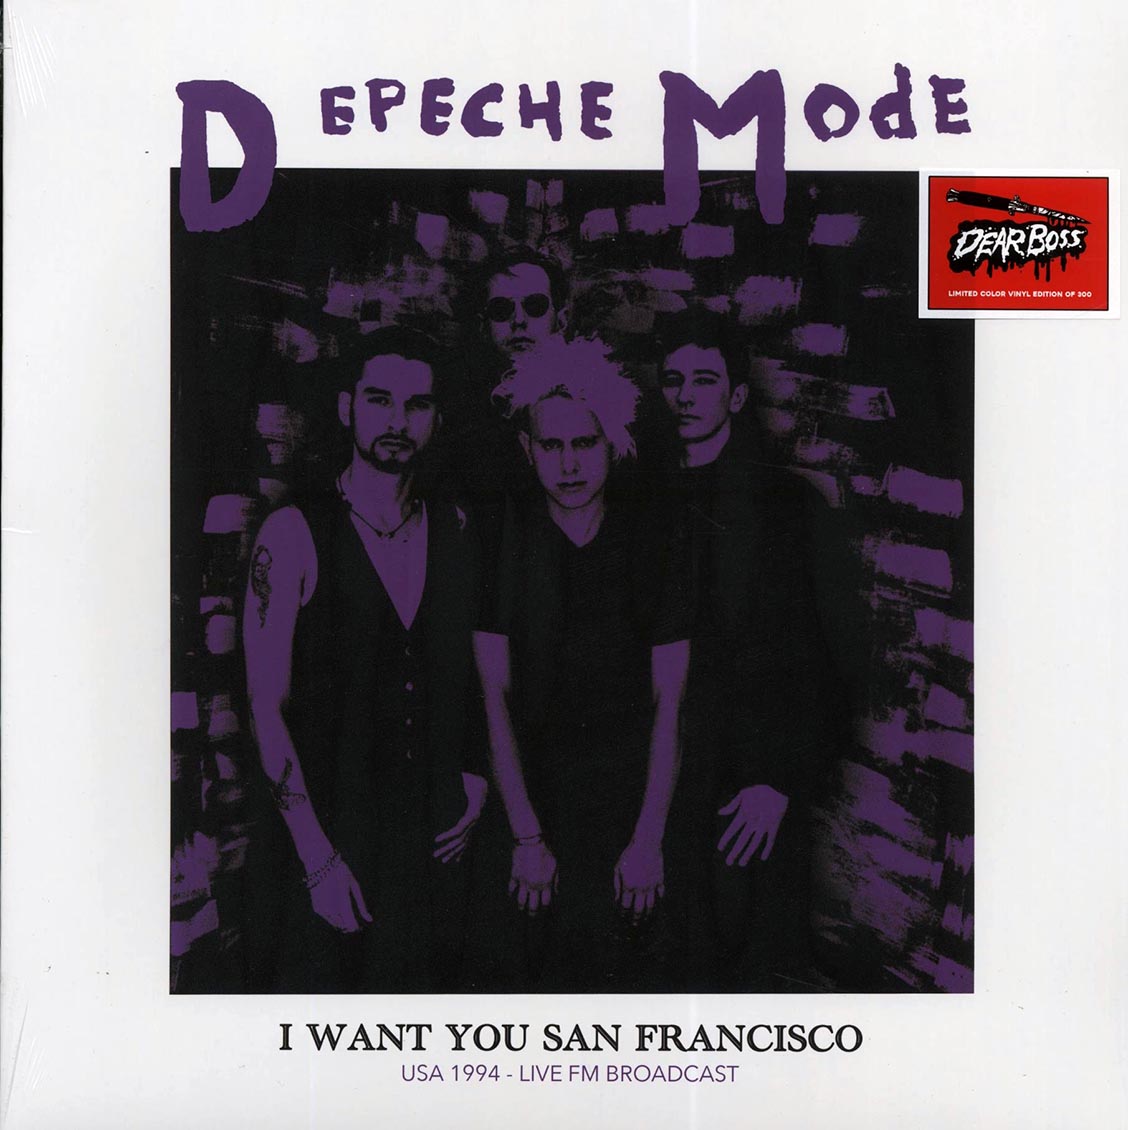 Depeche Mode - I Want You San Francisco: USA 1994 Live FM Broadcast (ltd. 300 copies made) (colored vinyl) - Vinyl LP